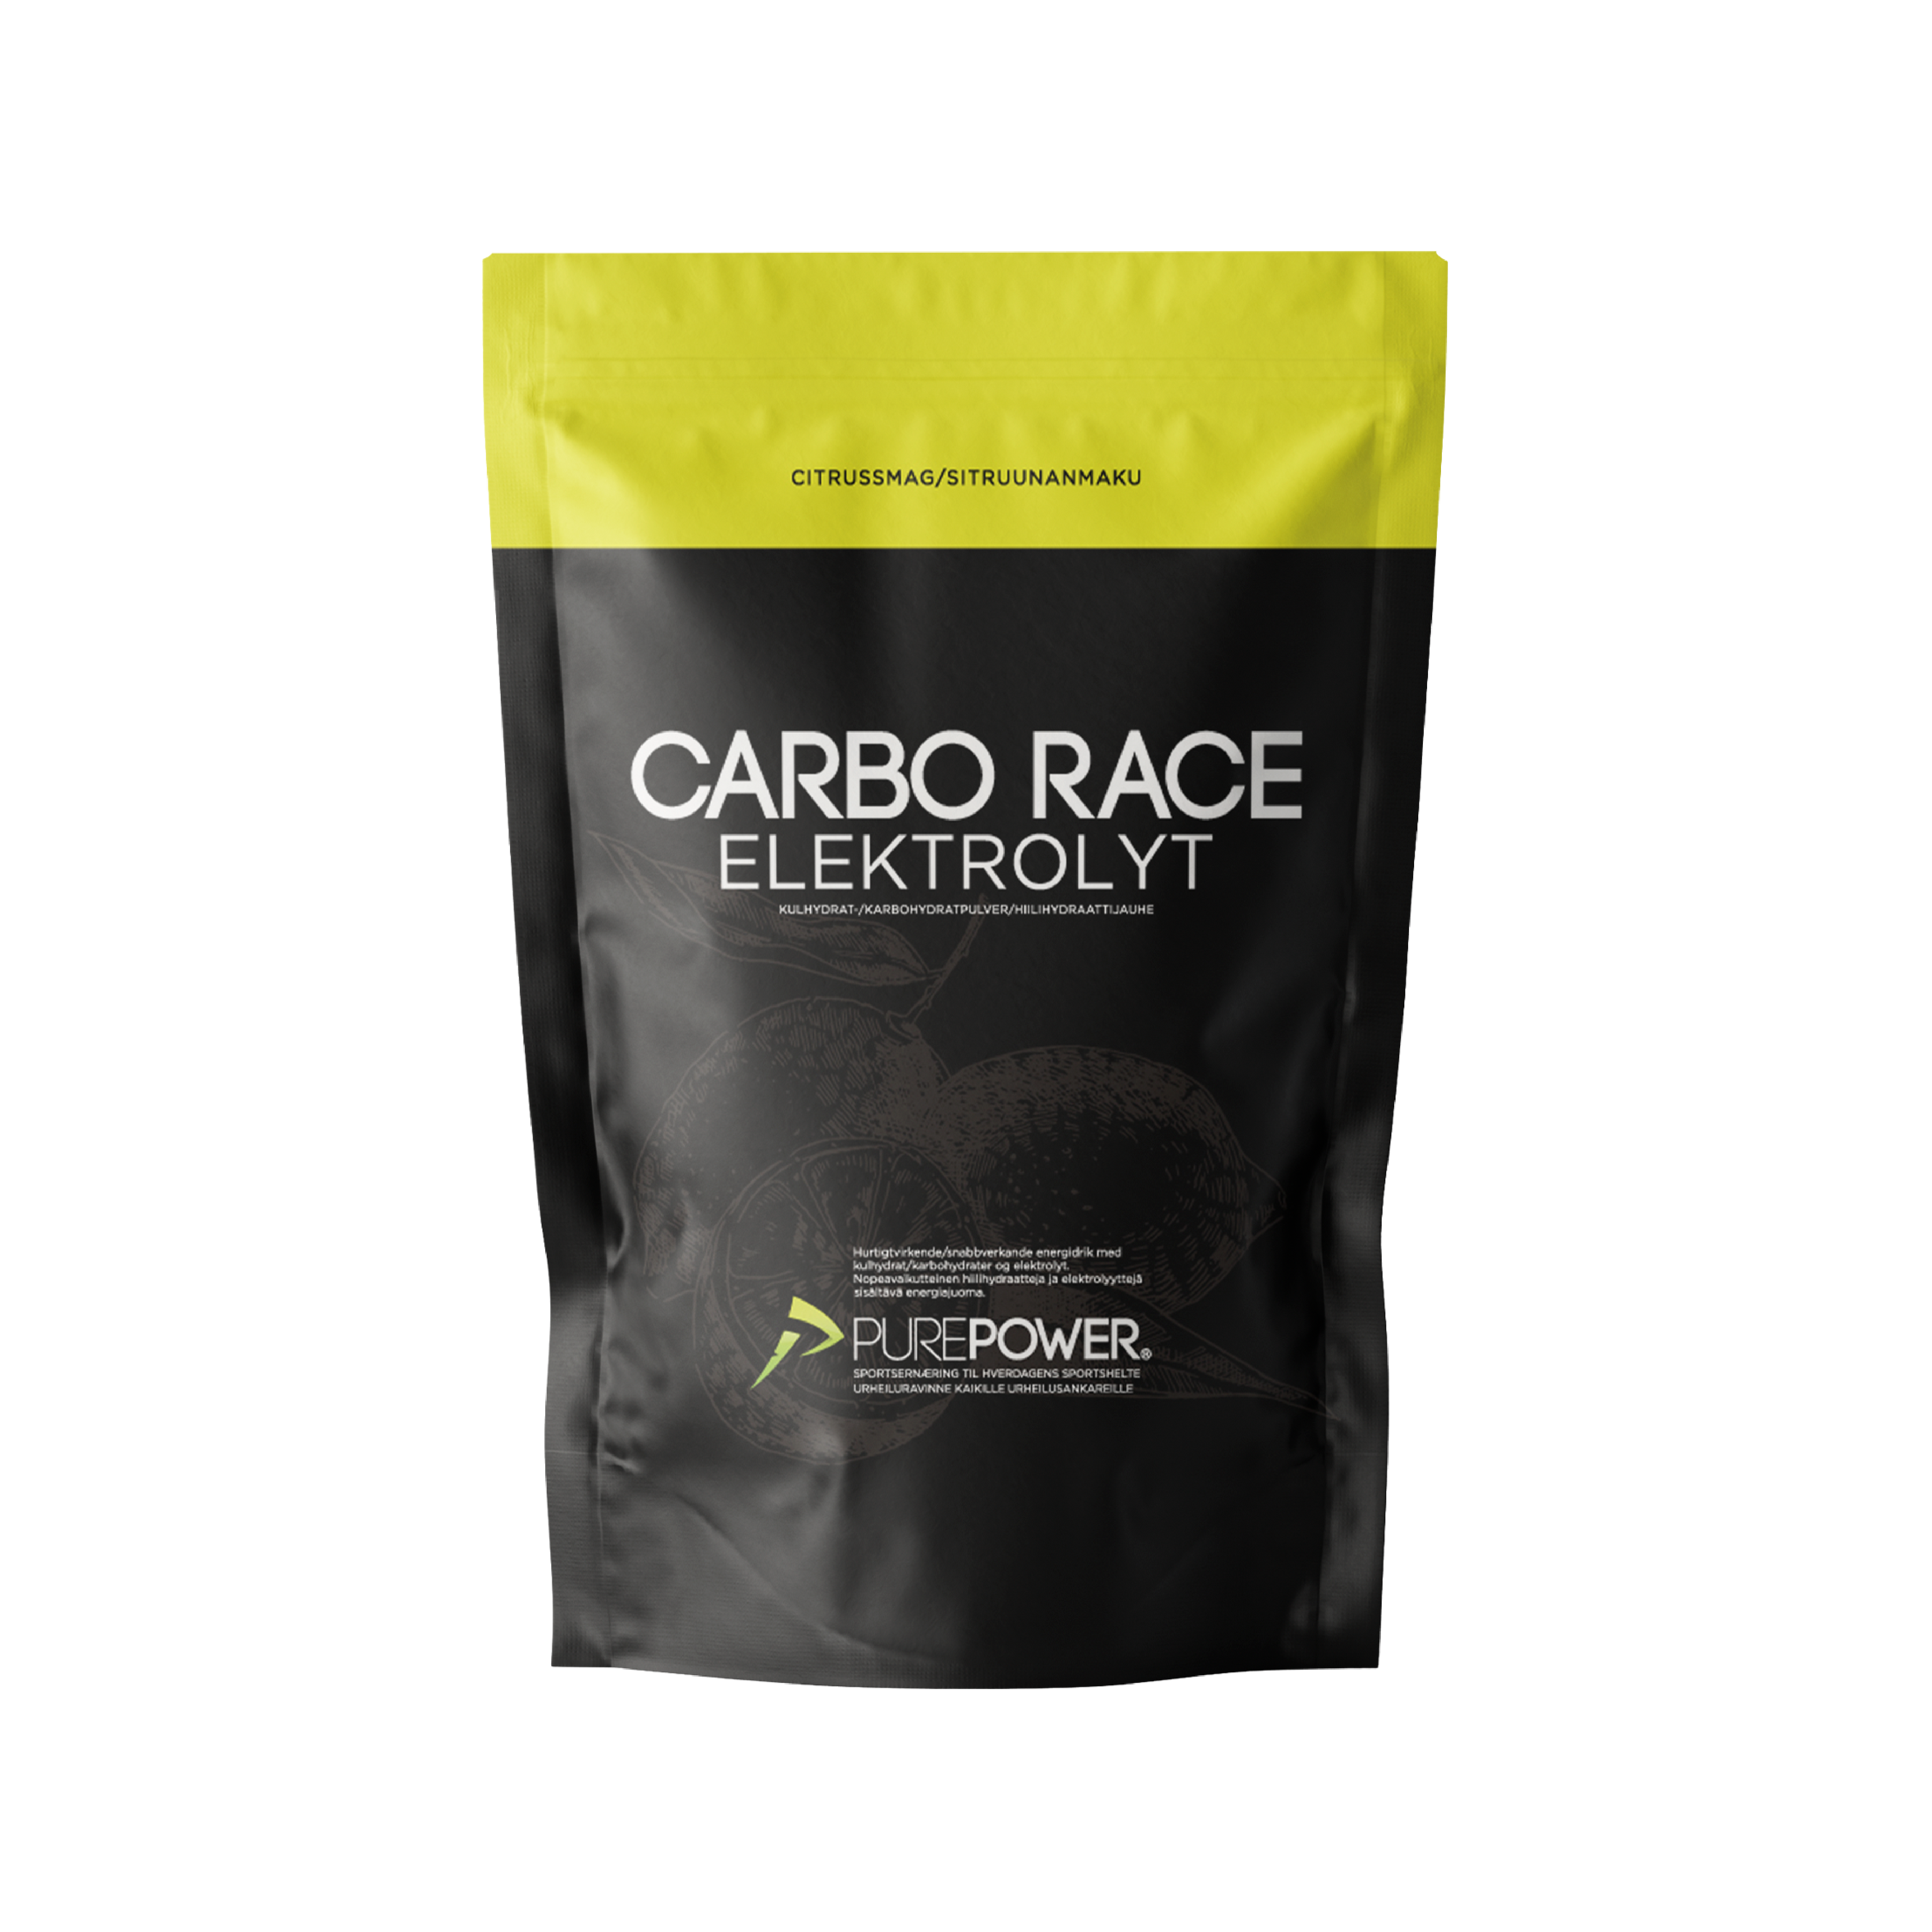 Billede af Carbo Race Elektrolyt Citrus 1 kg hos PurePower